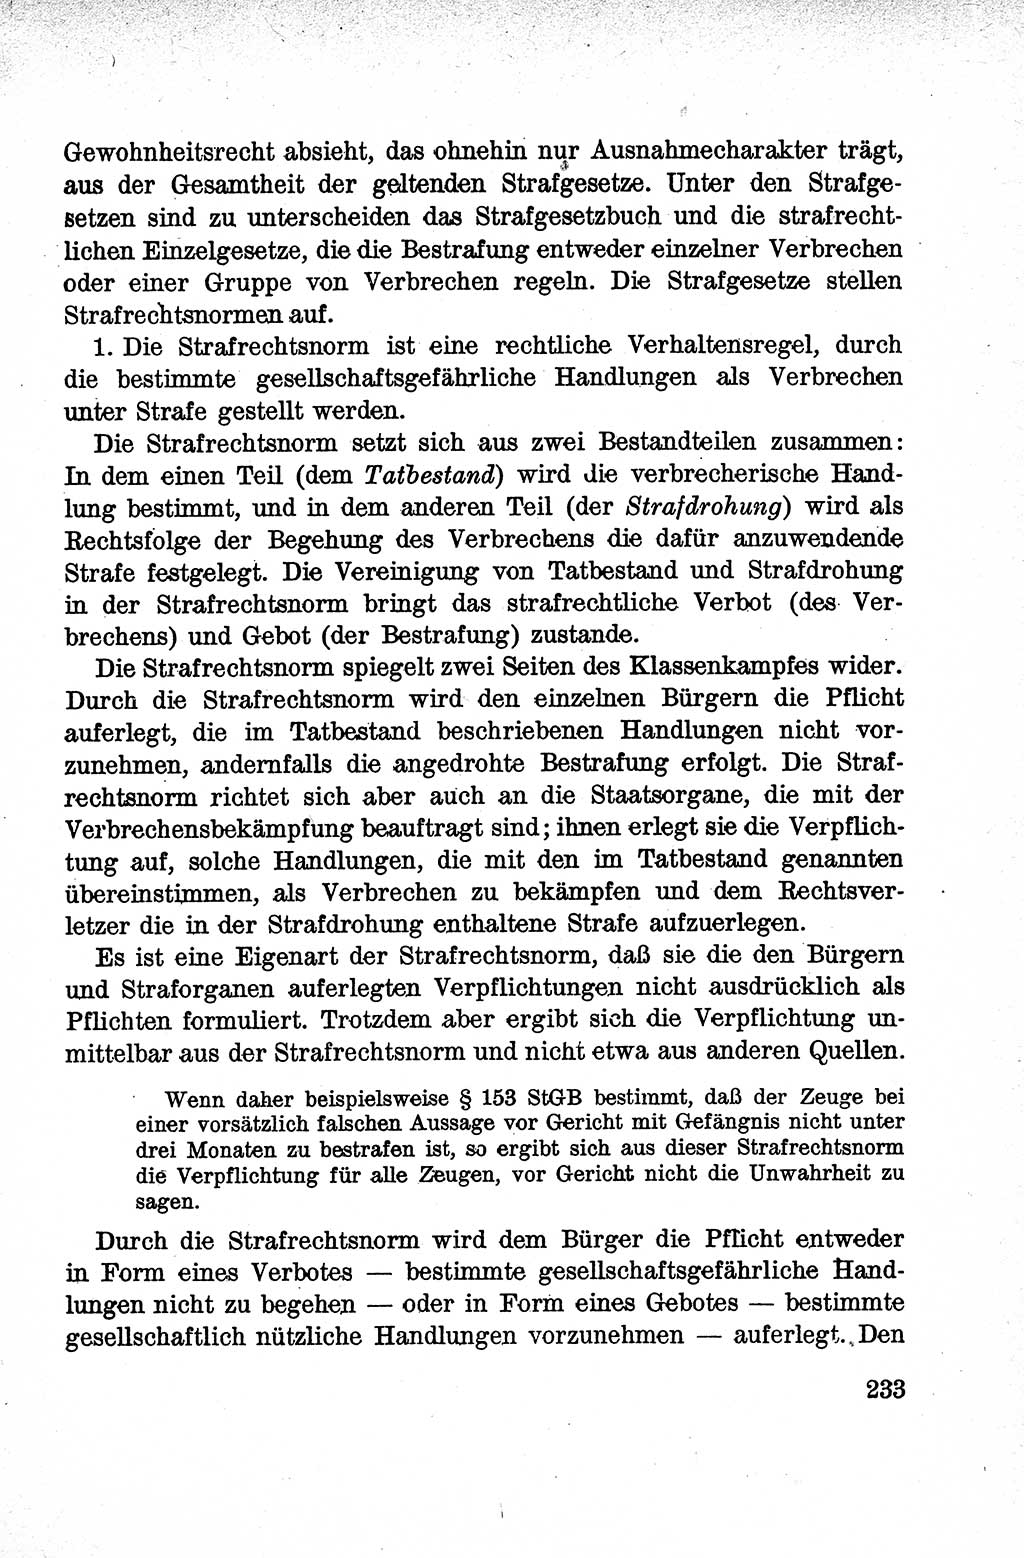 Lehrbuch des Strafrechts der Deutschen Demokratischen Republik (DDR), Allgemeiner Teil 1959, Seite 233 (Lb. Strafr. DDR AT 1959, S. 233)